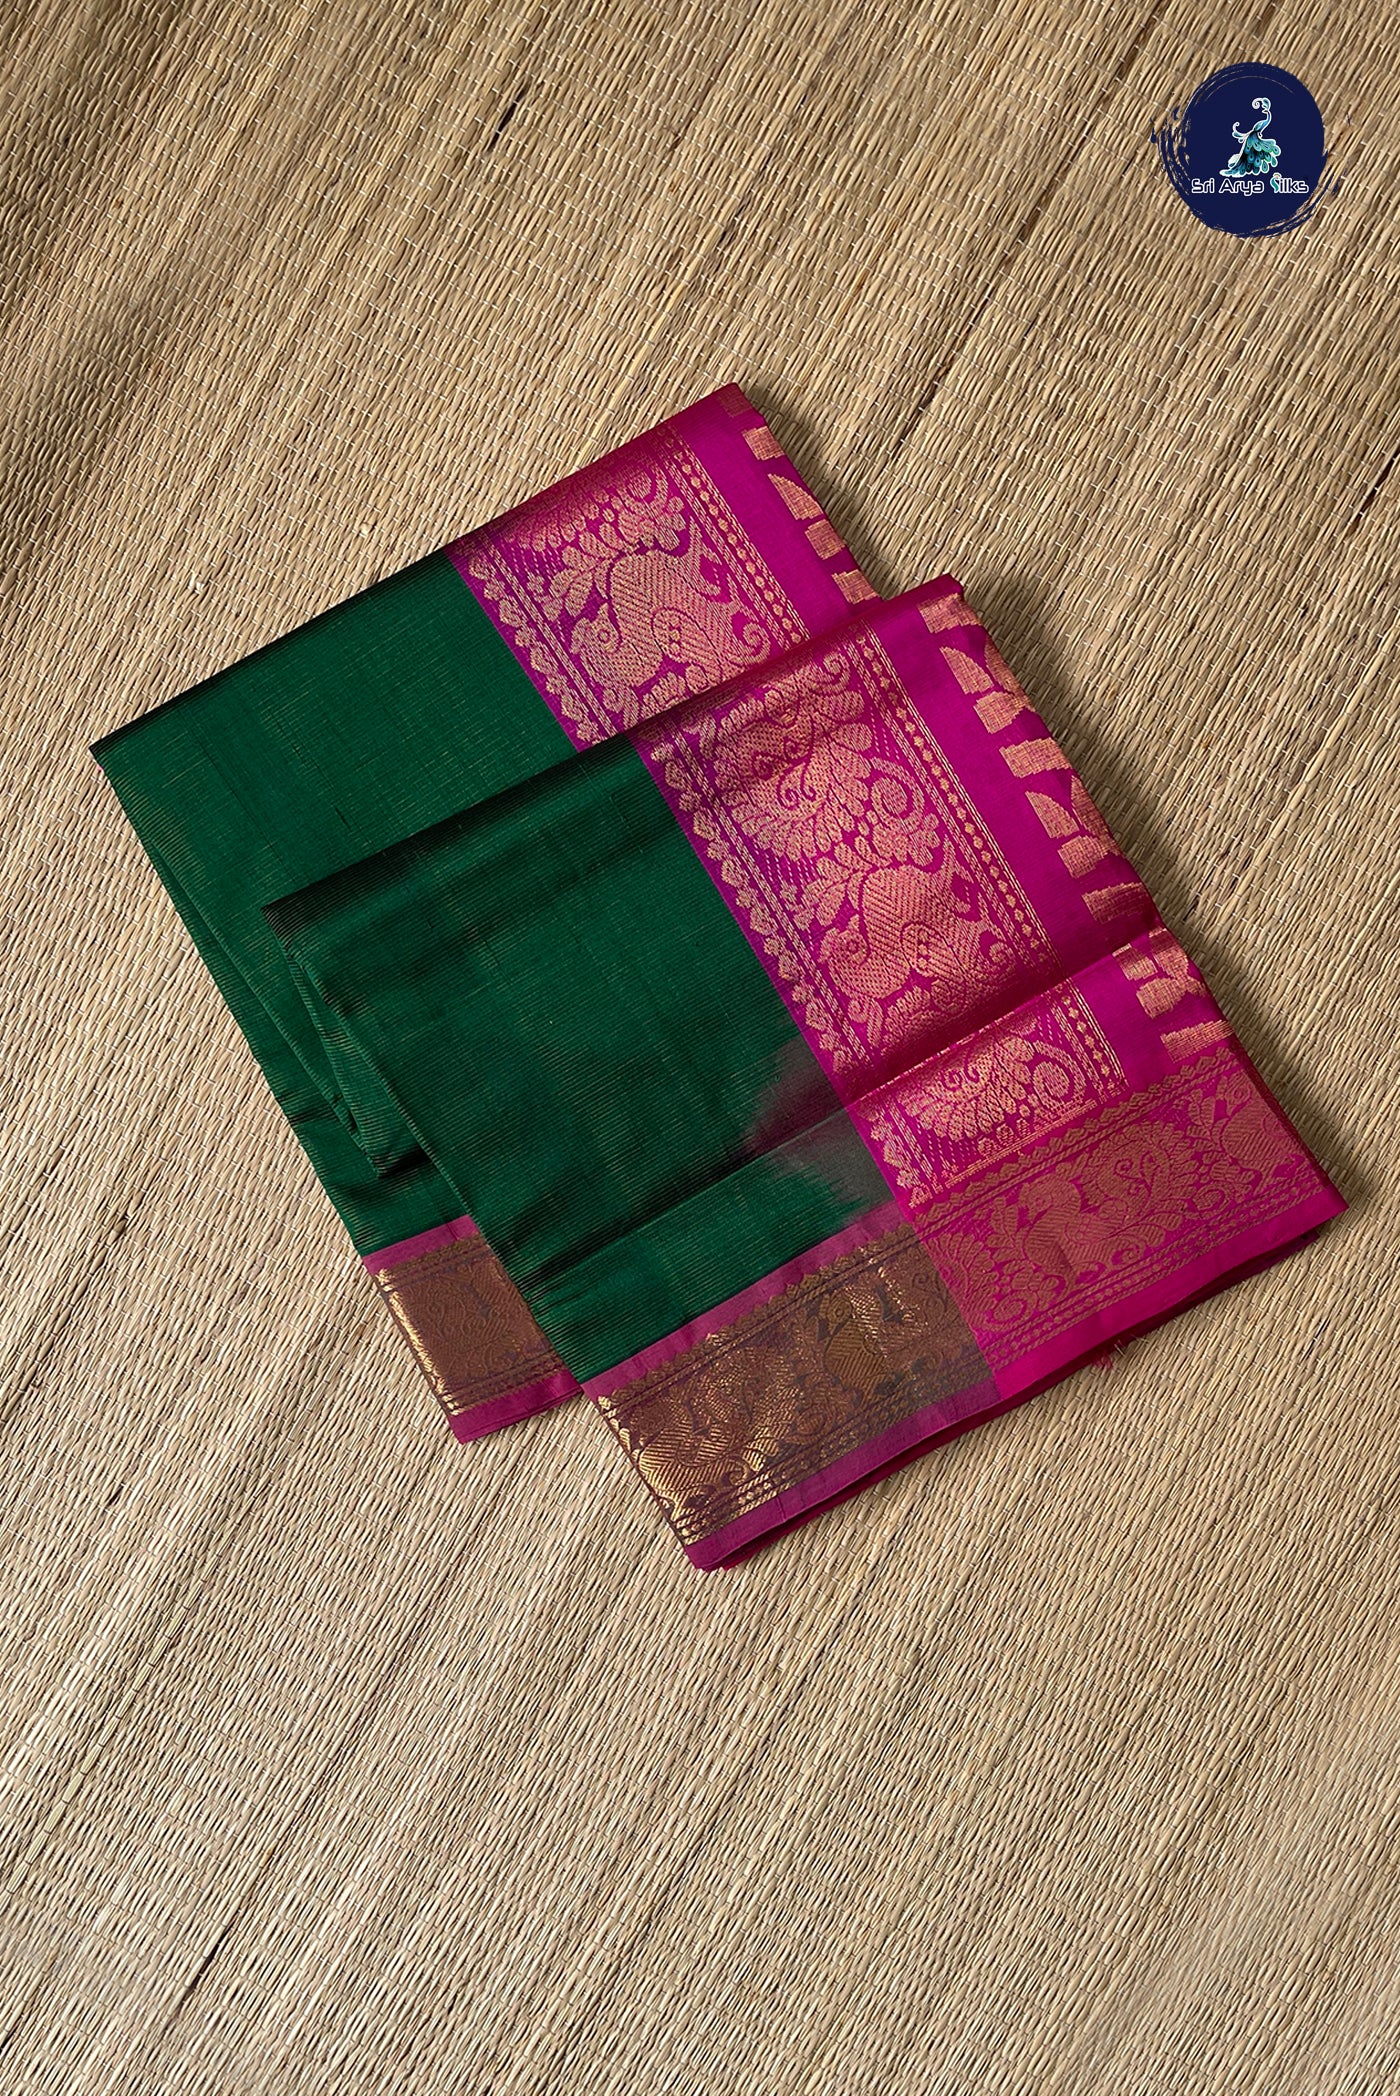 Dark Green Vaira Oosi Silk Cotton Saree With Vaira Oosi Pattern